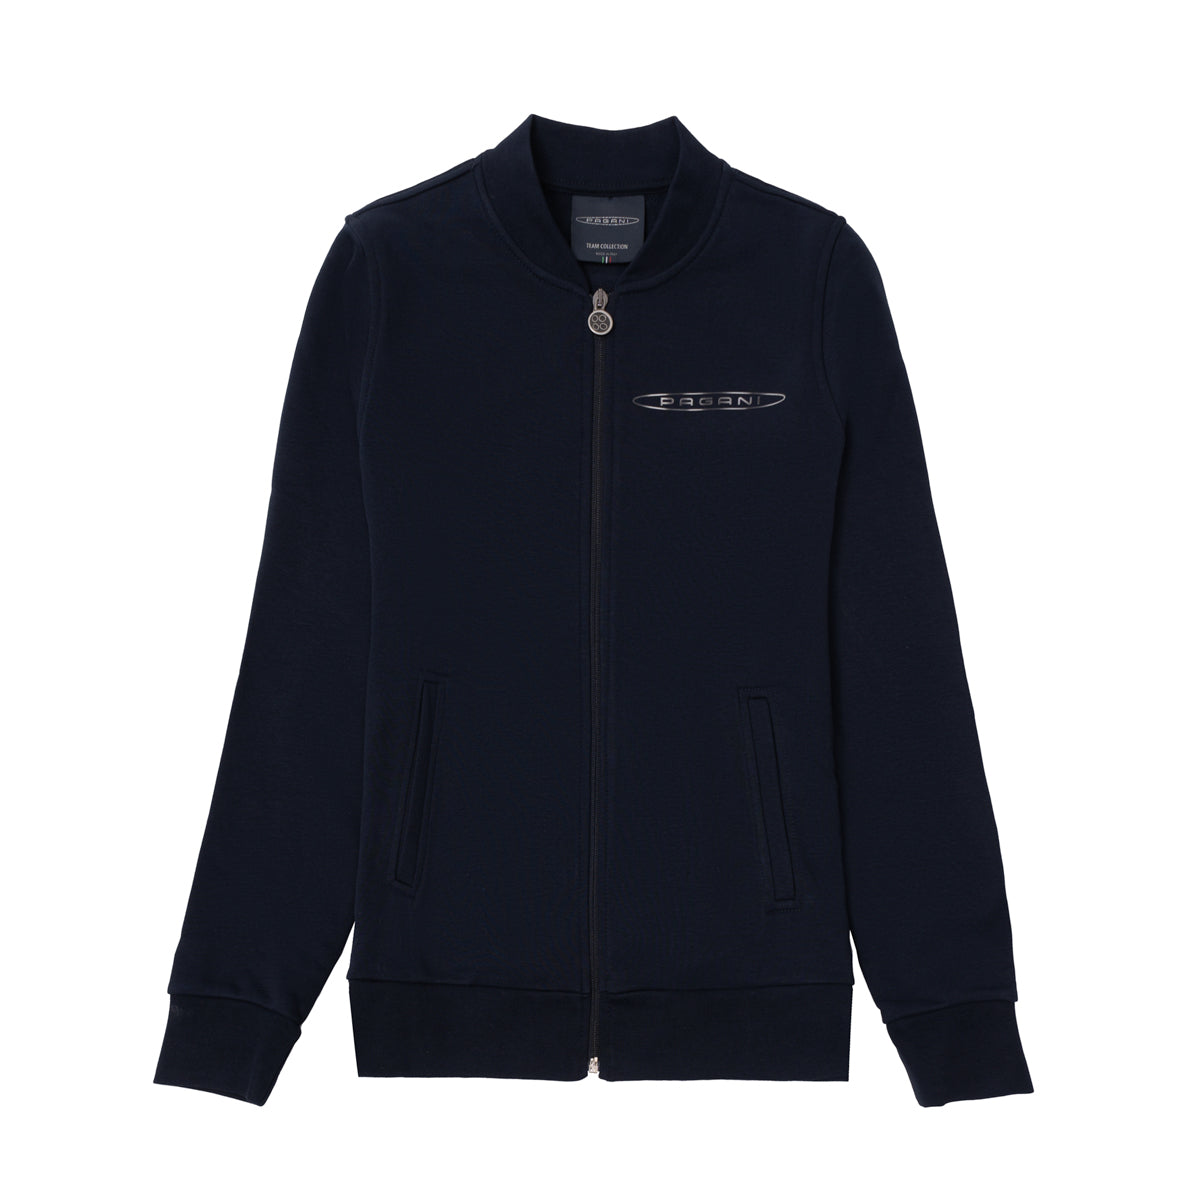 Damen-Basic-Sweatshirt Mit Durchgehendem Reissverschluss Schwarz | Team Collection